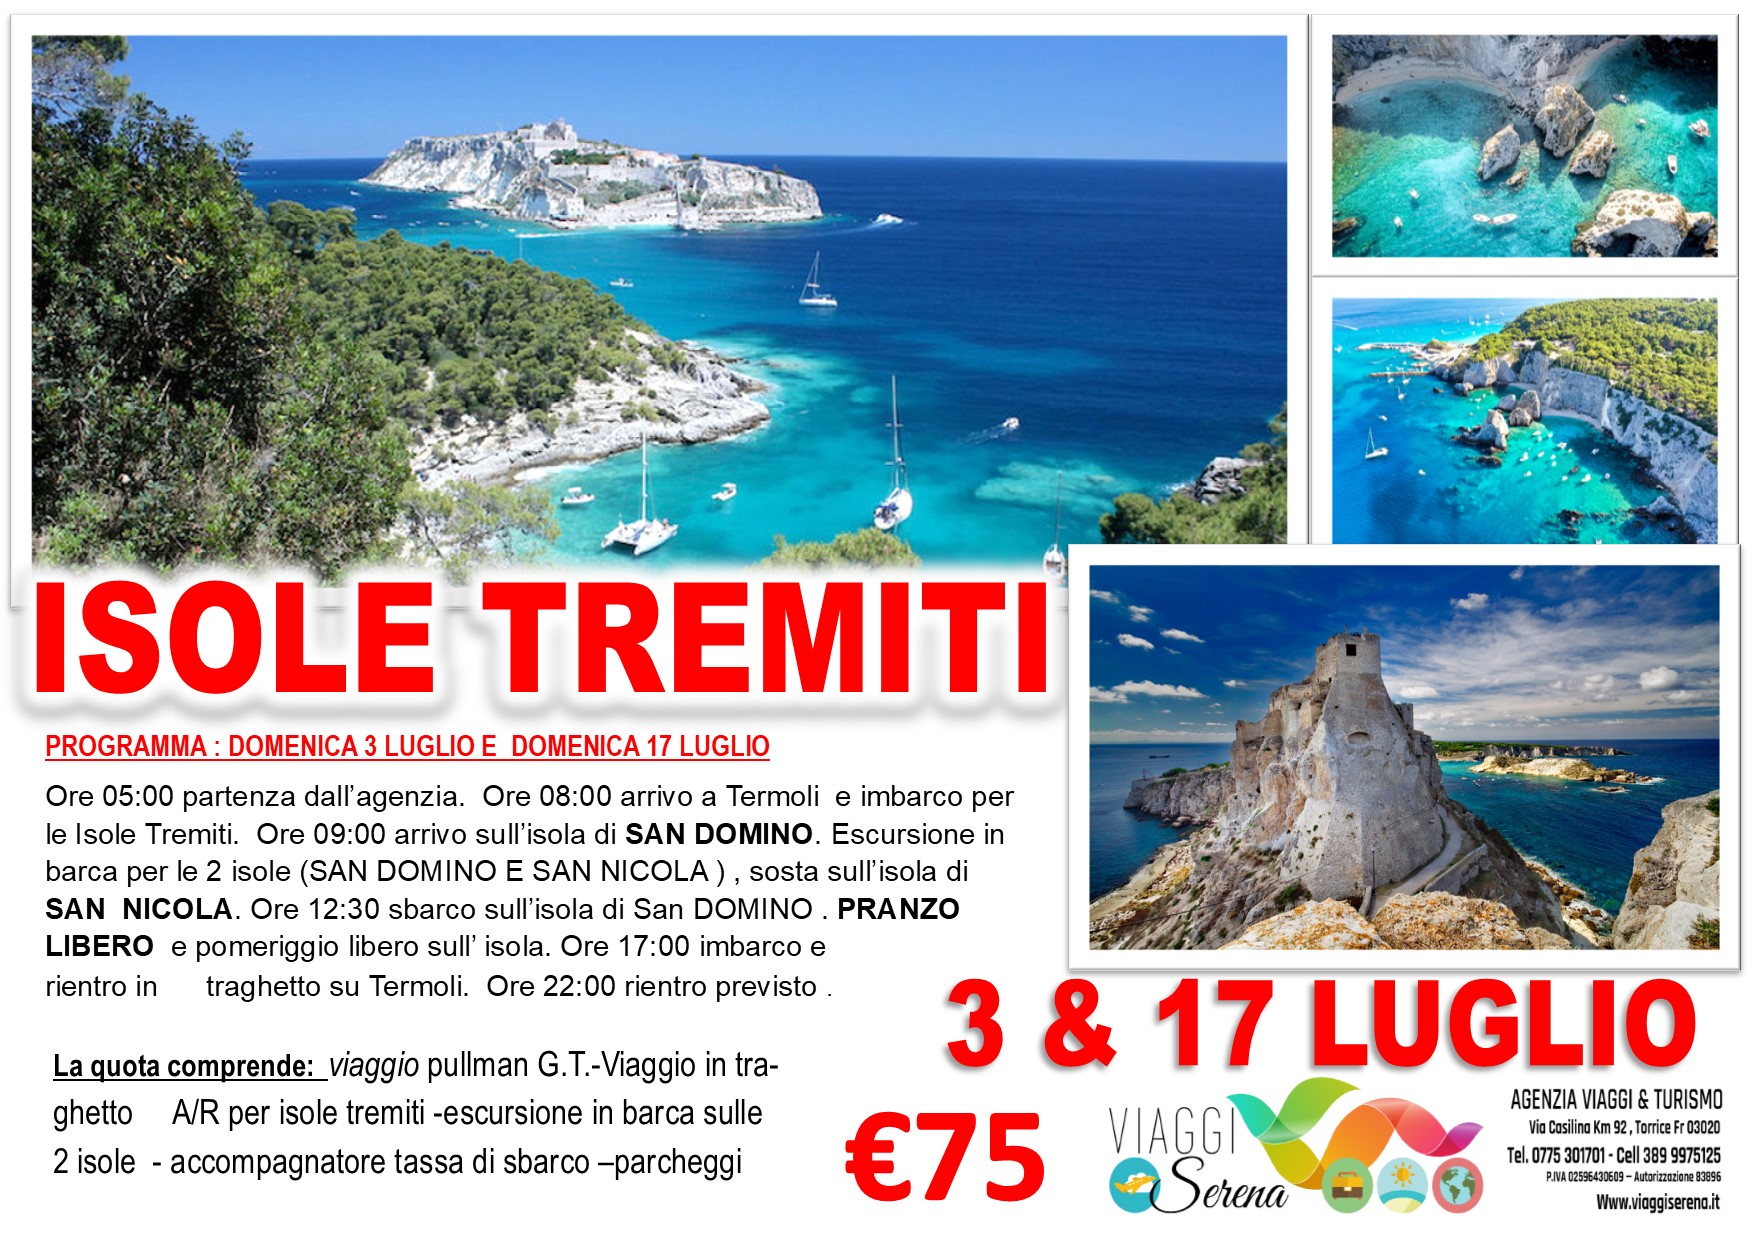 Viaggi di Gruppo: Isole Tremiti, San Domino & San Nicola 3 Luglio € 75,00